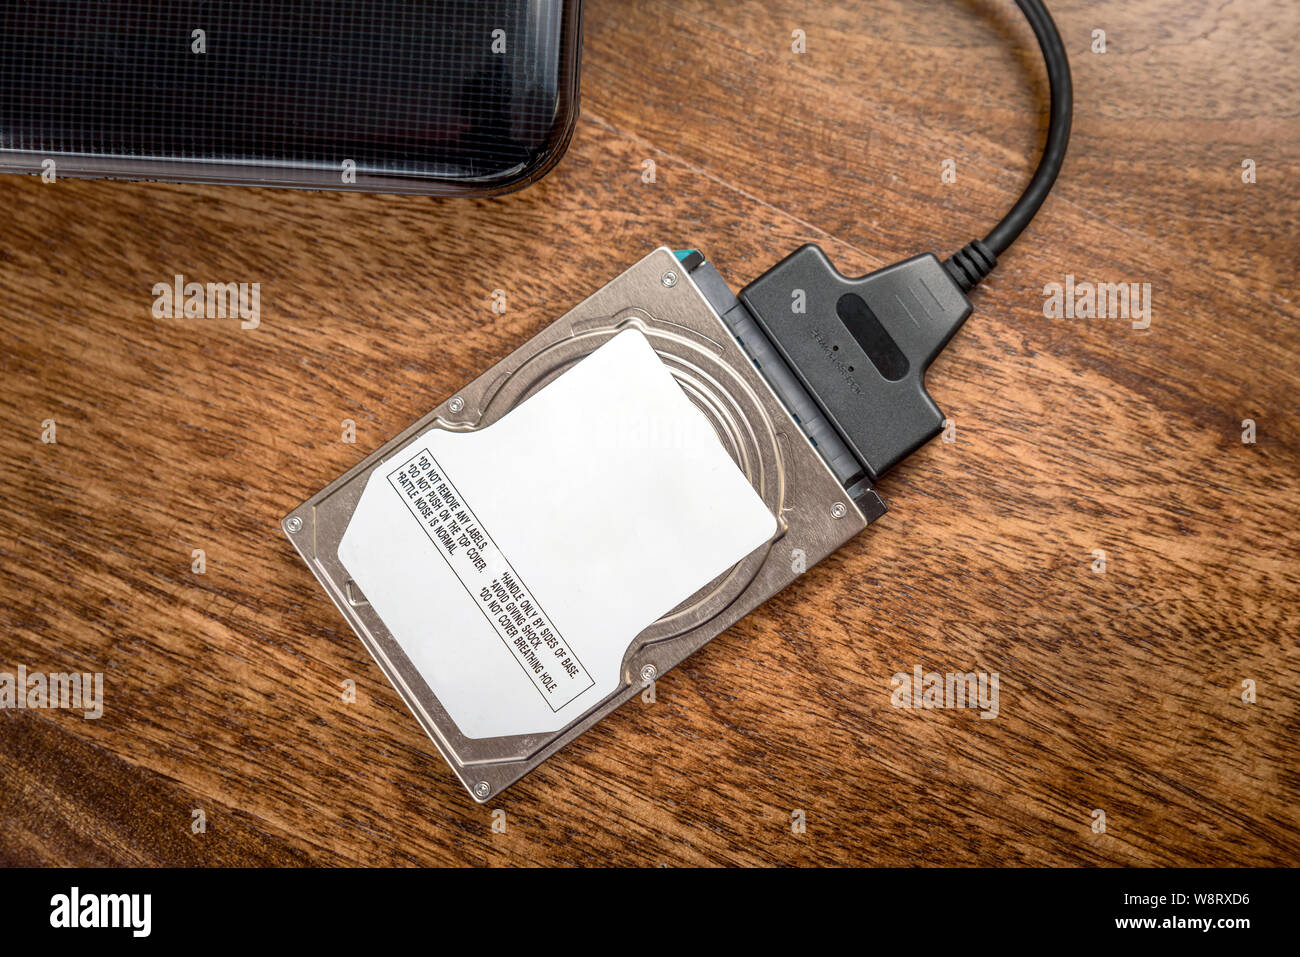 Adaptateur USB 3.0 / SATA 2.5 SSD-HDD auto-alimenté - Accessoires disque  dur - Garantie 3 ans LDLC